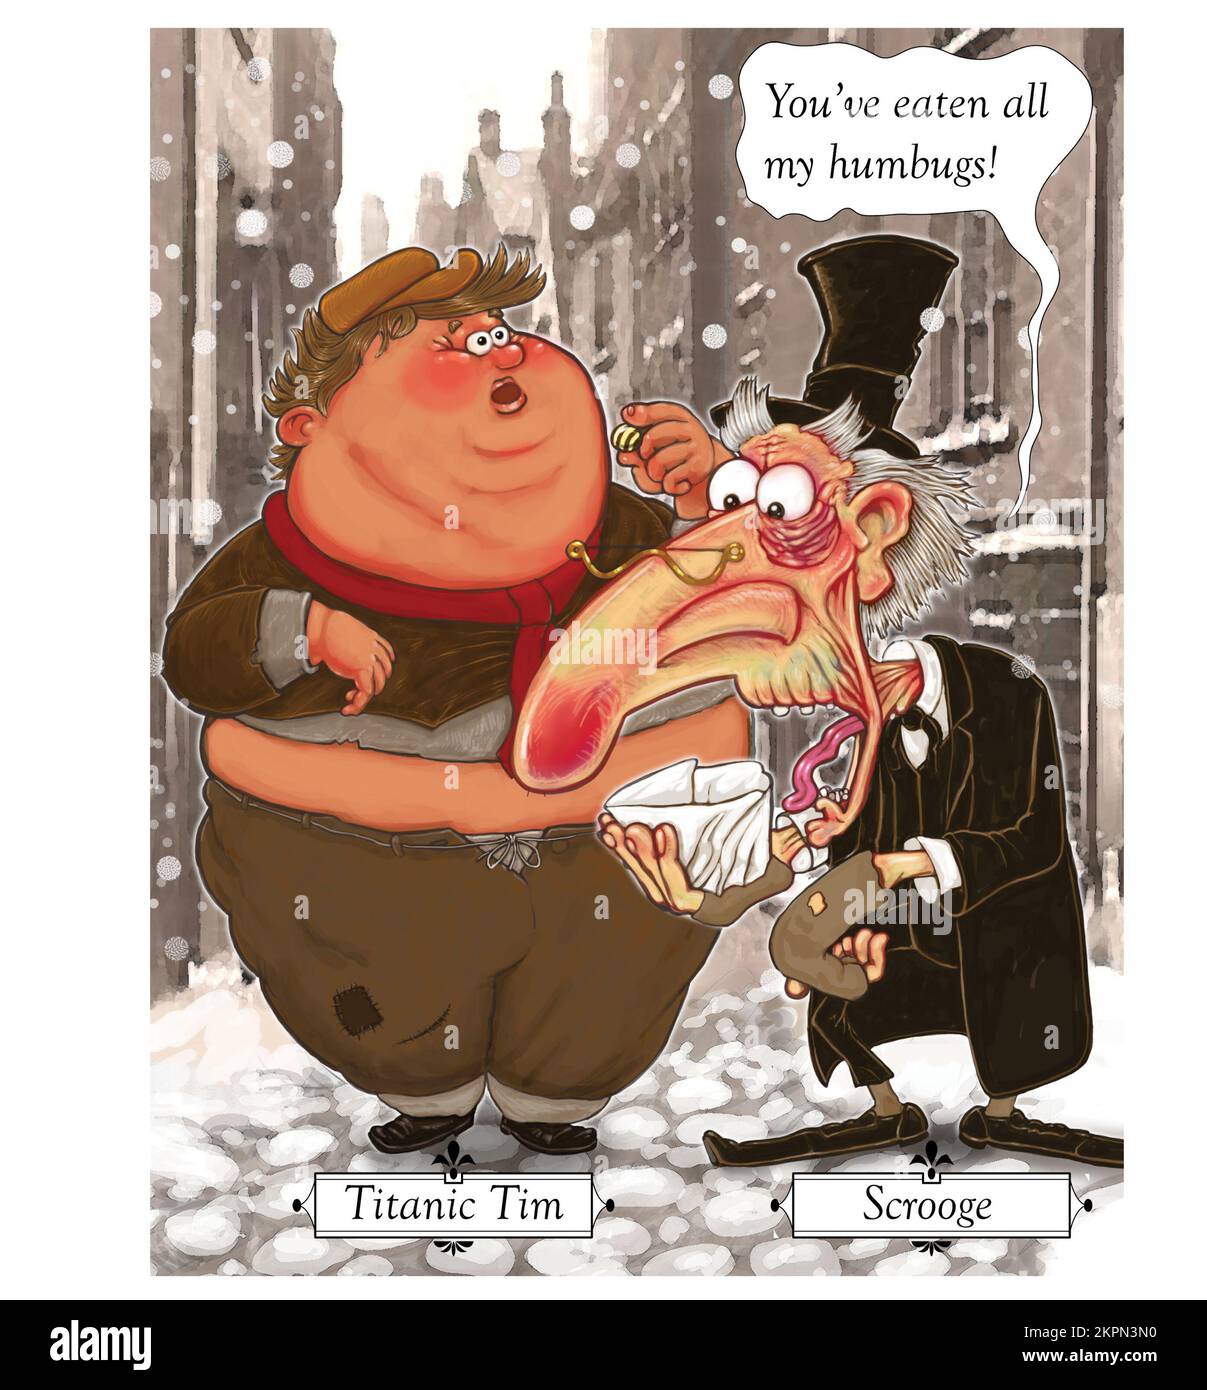 Divertente Natale scherzo arte, Scrouge guarda la sua borsa di humbugs e biasmi Titanic Tim per mangiarli tutti. Dickens ha ispirato festive cartolina di Natale gafg Foto Stock